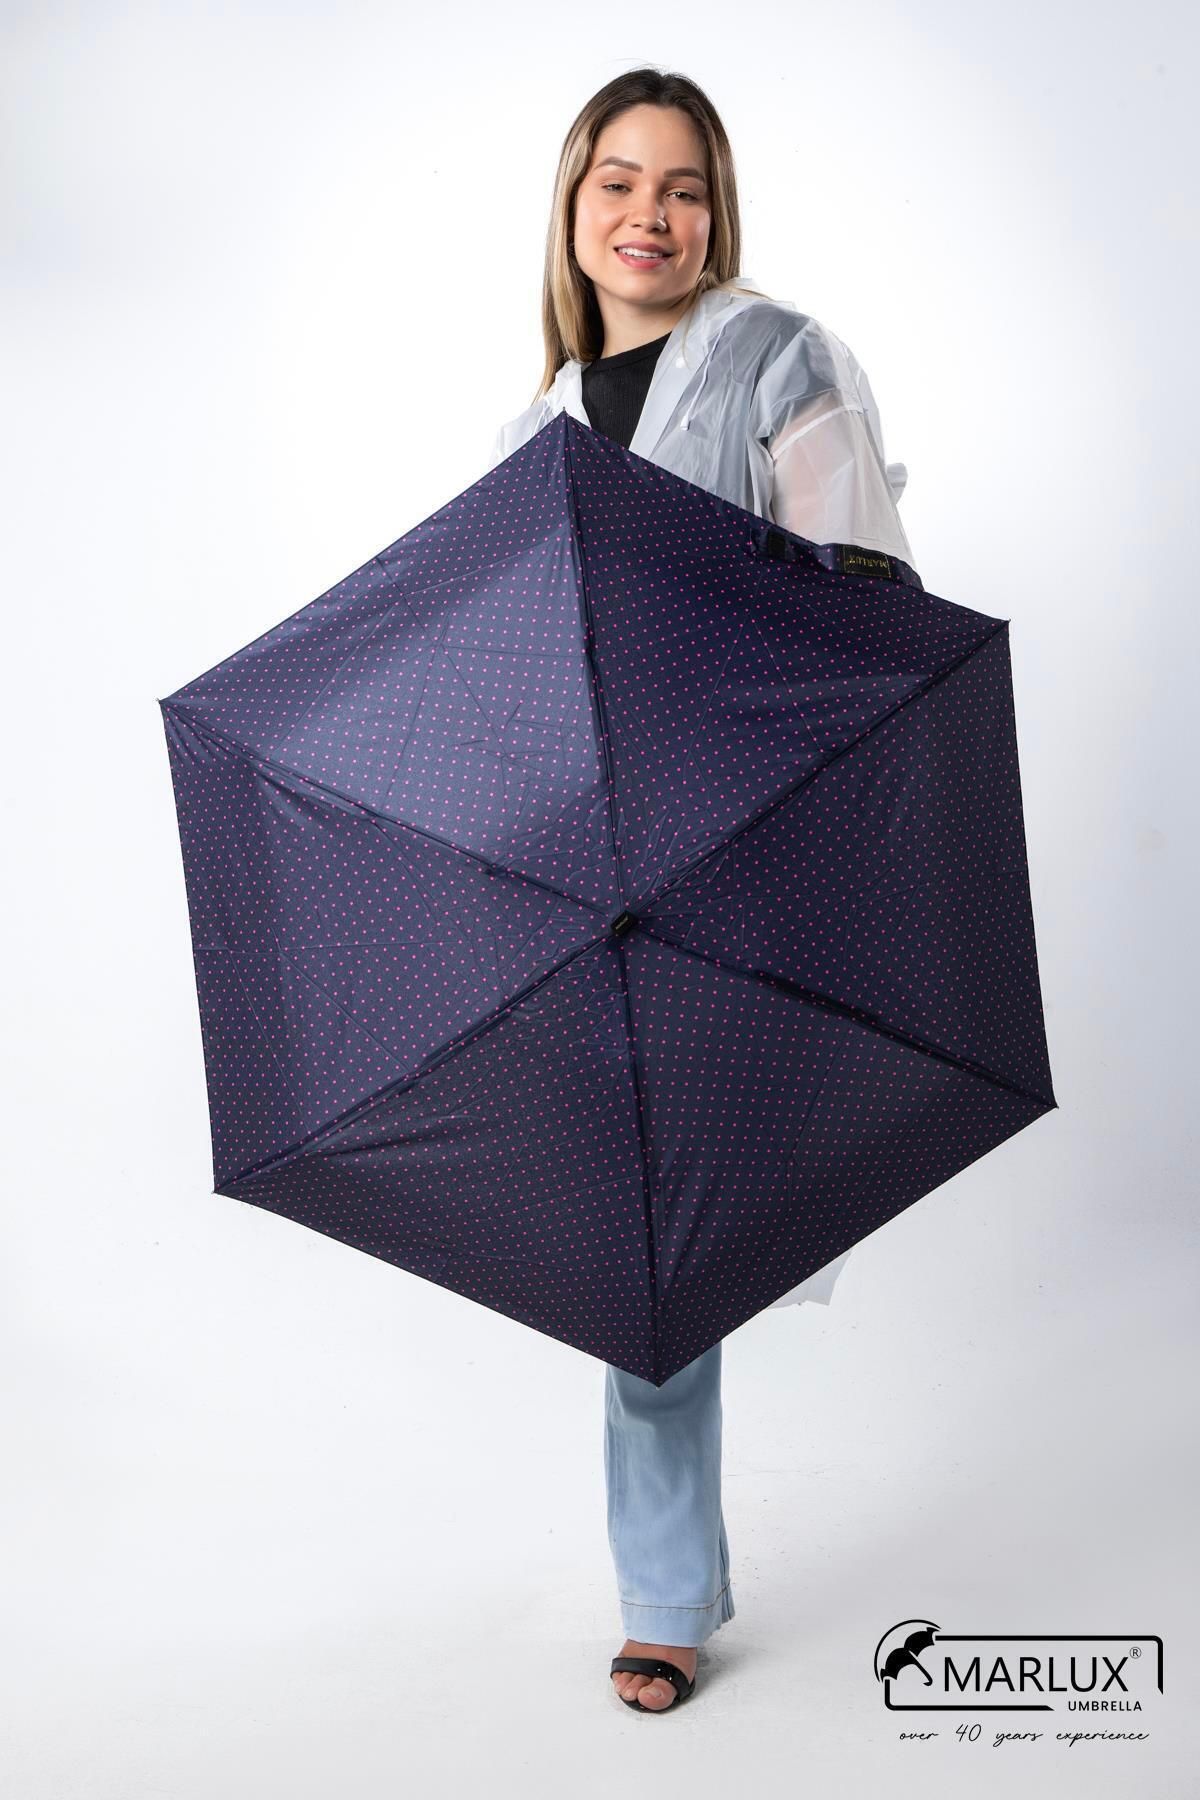 Marlux Lacivert Puantiyeli Çanta Boy Kadın Şemsiye M21mar210pr02